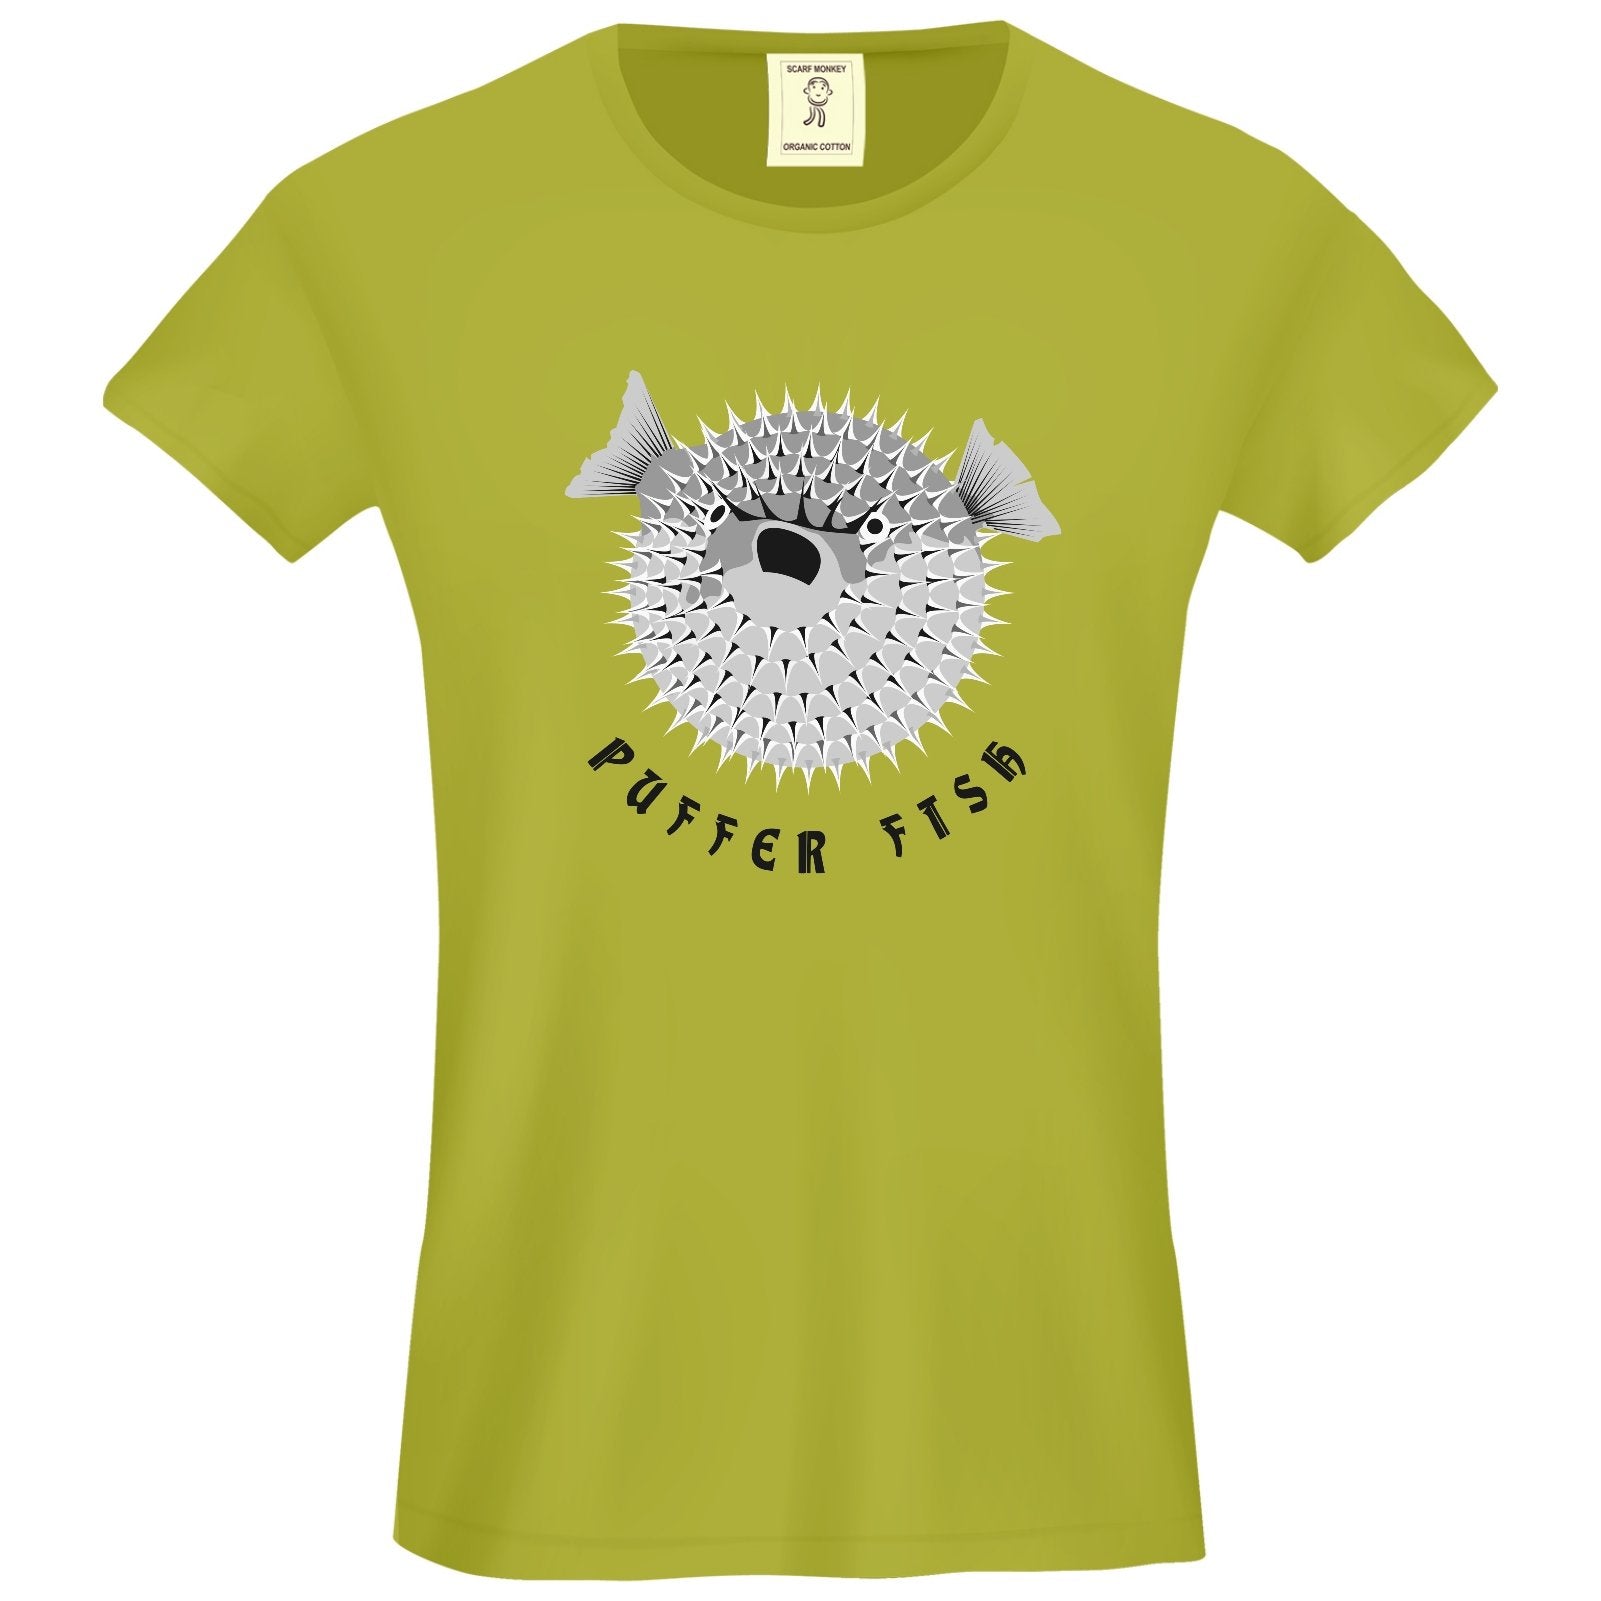 Spikey Pufferfish Organic Cotton Girls T-Shirt - Scarf Monkey